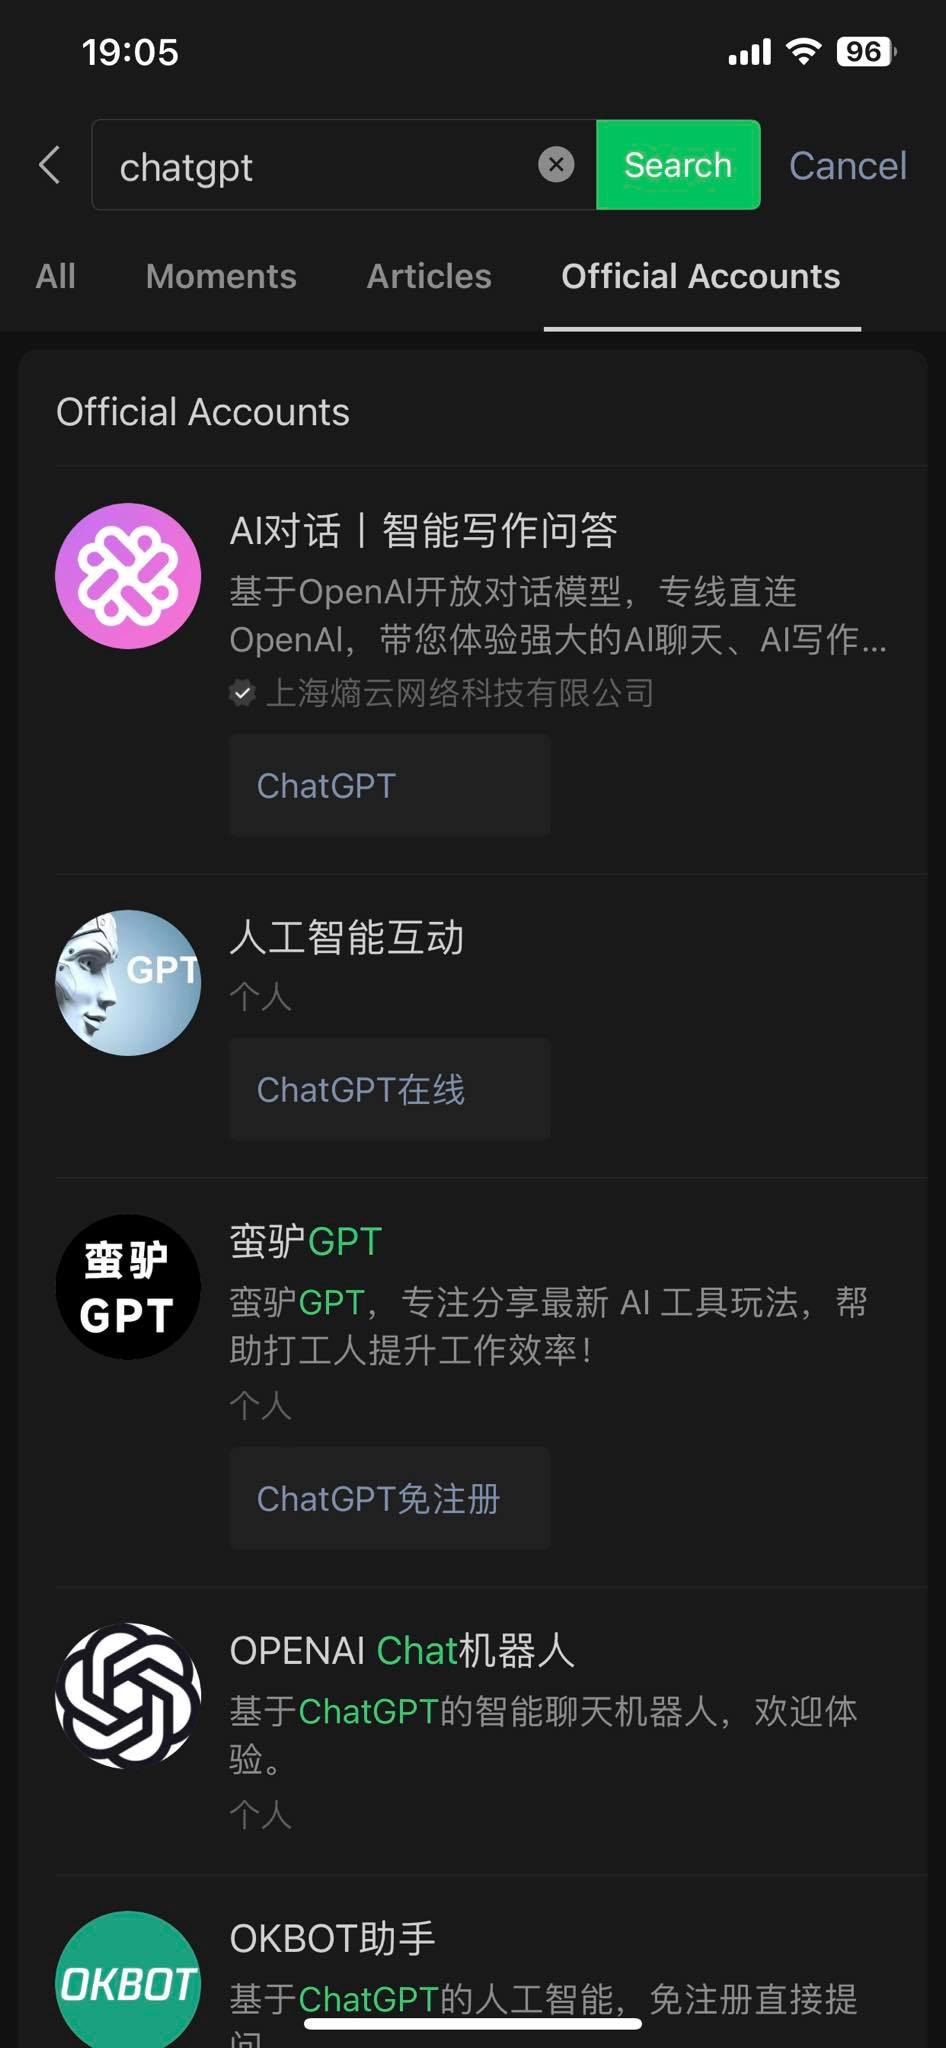 山寨版 ChatGPT 微信